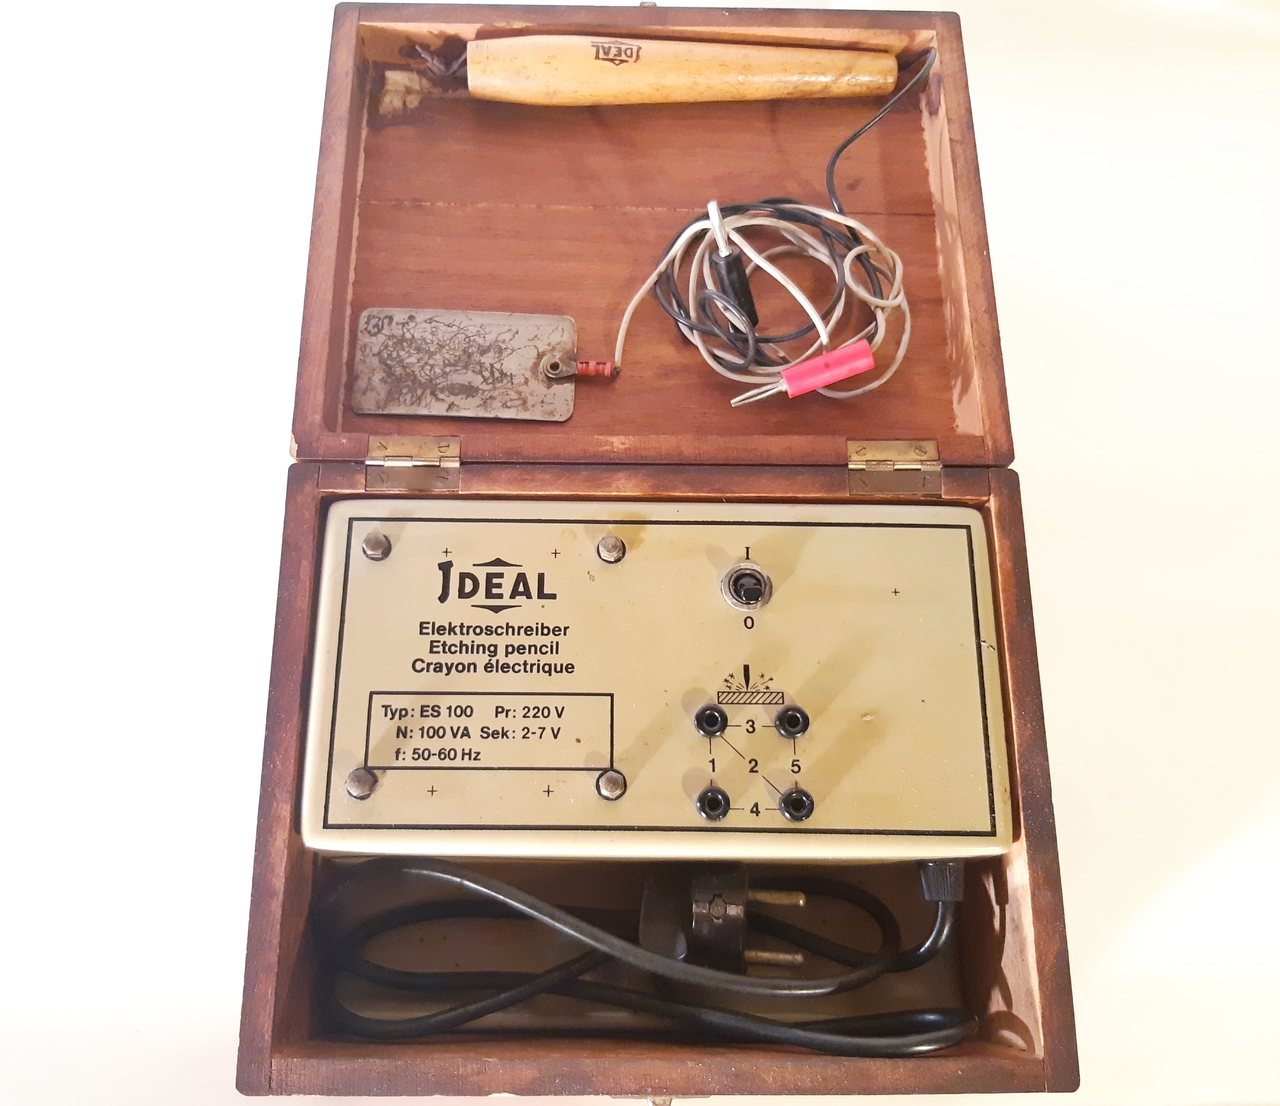 IDEAL Elektroschreiber TYP: ES100, um 1970